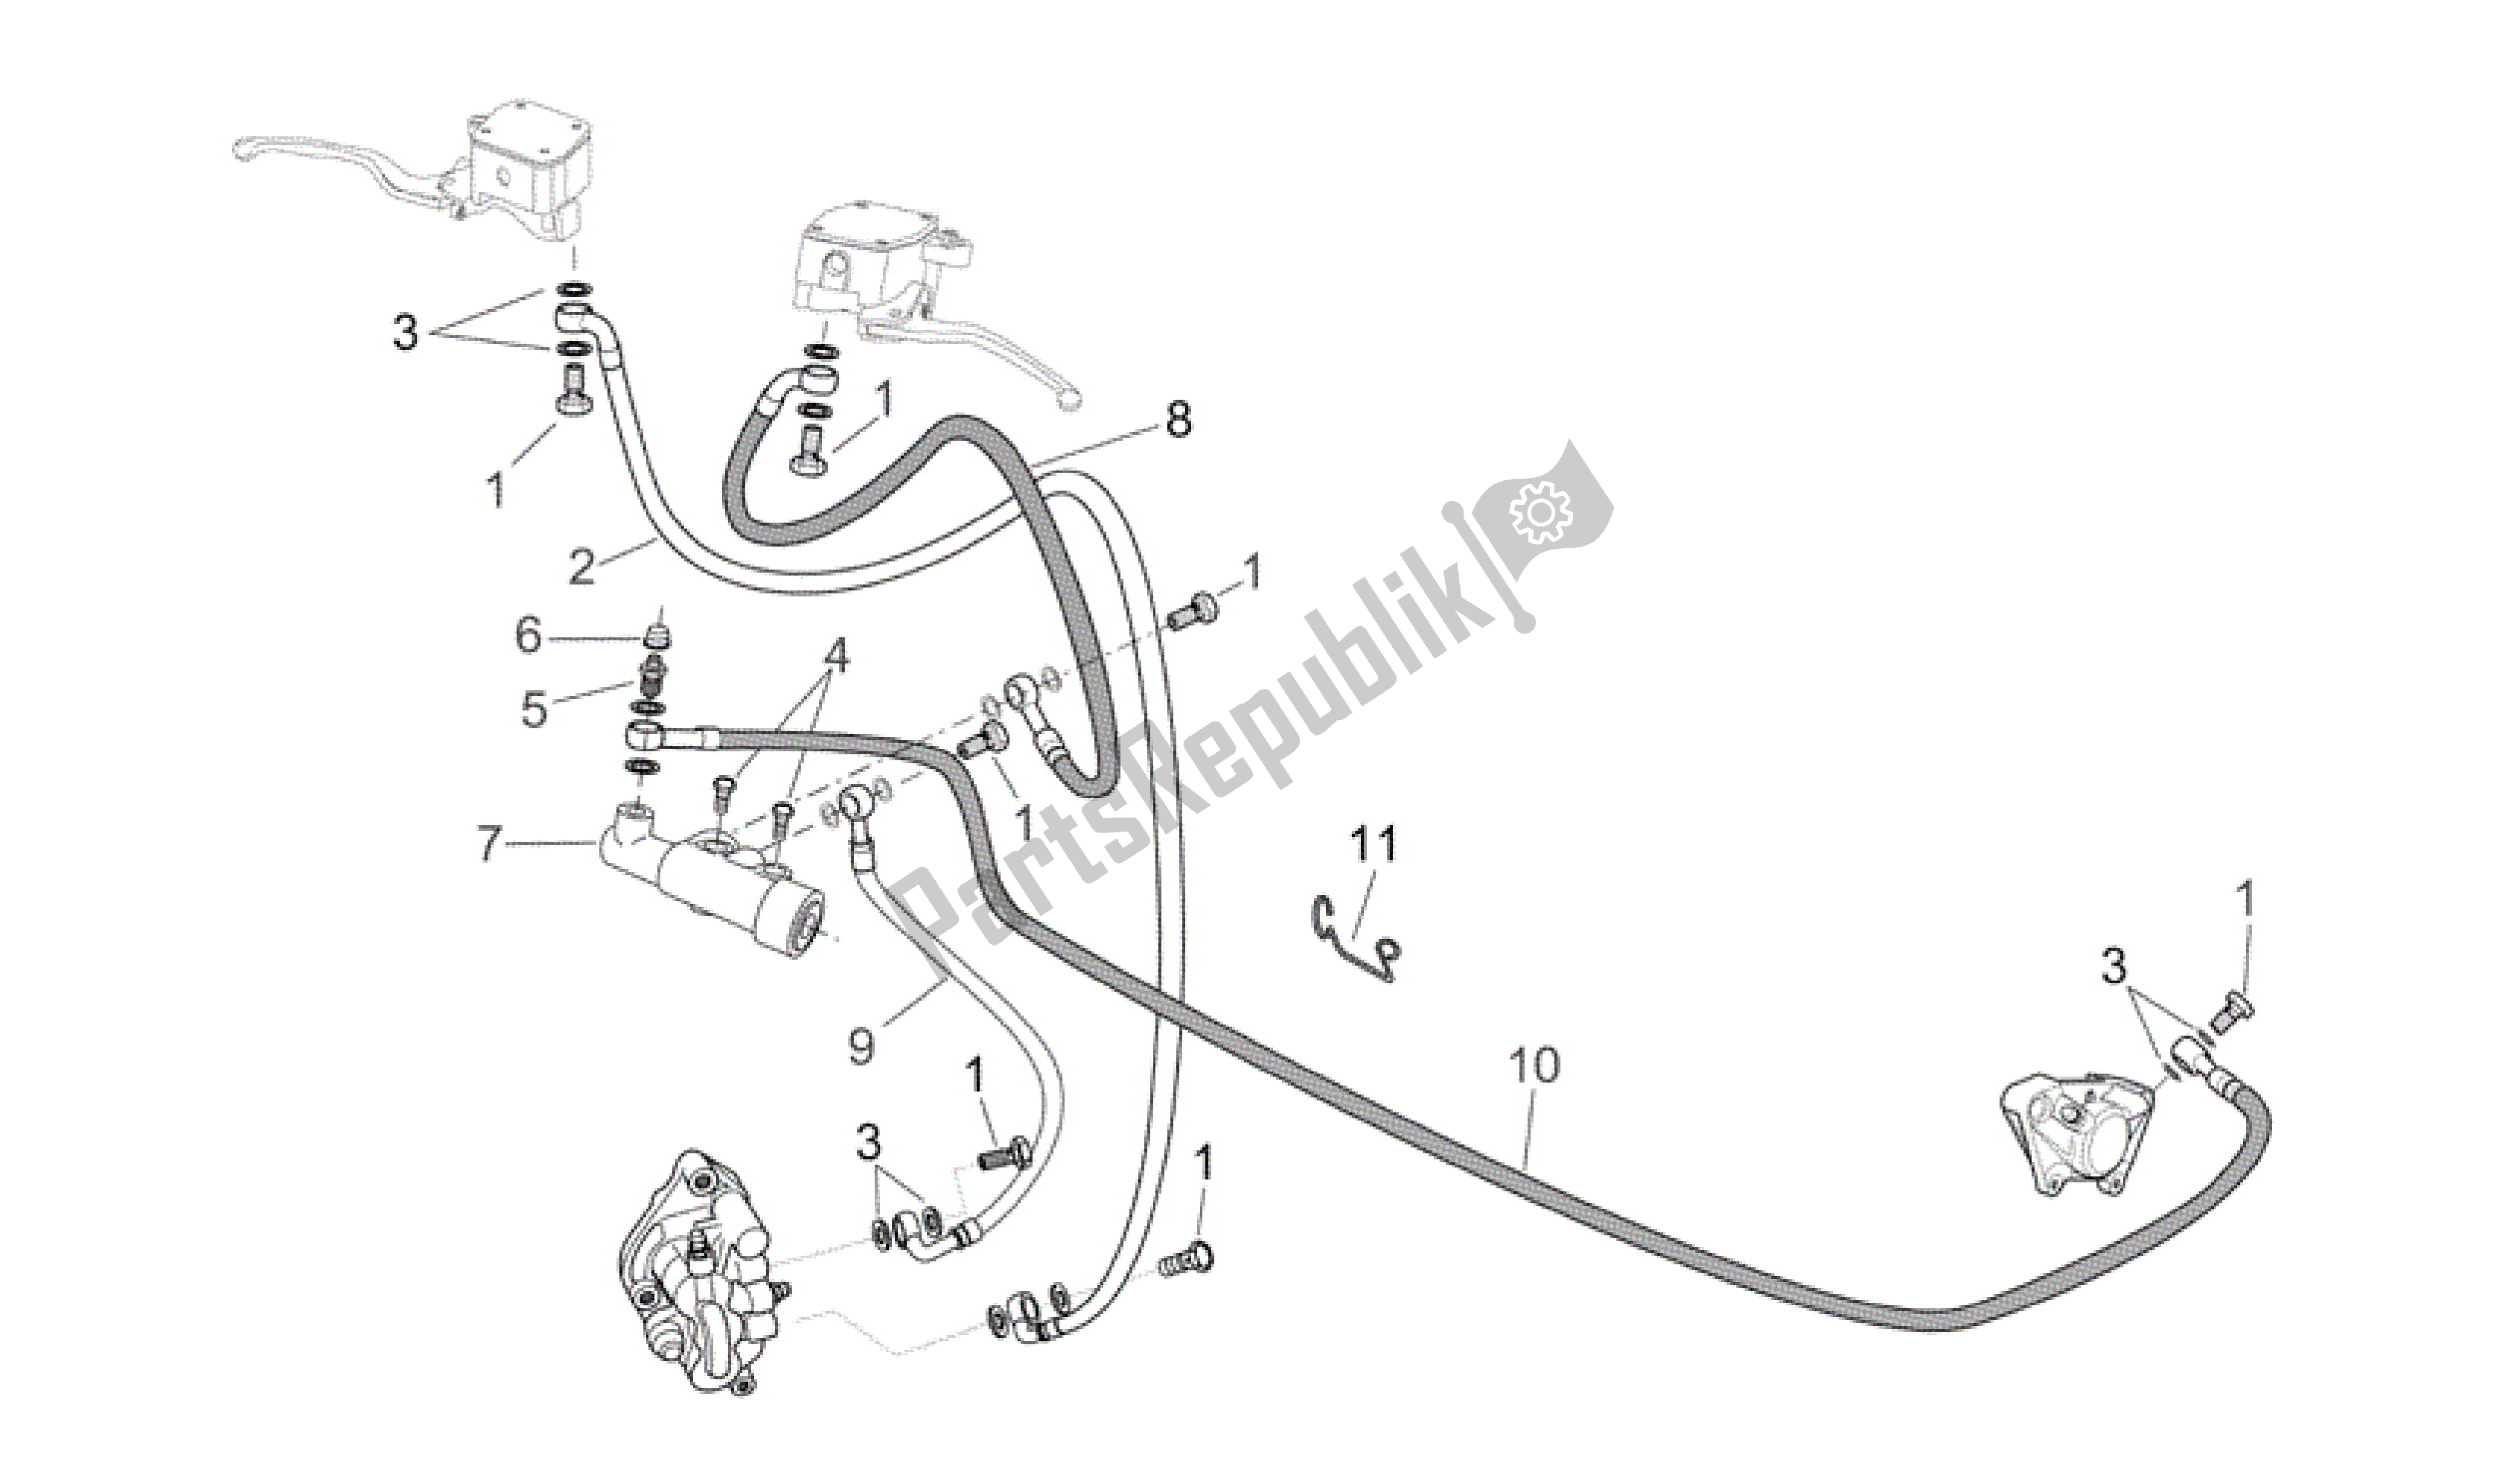 Alle onderdelen voor de Voor- / Achterremsysteem van de Aprilia Scarabeo 125 2004 - 2006